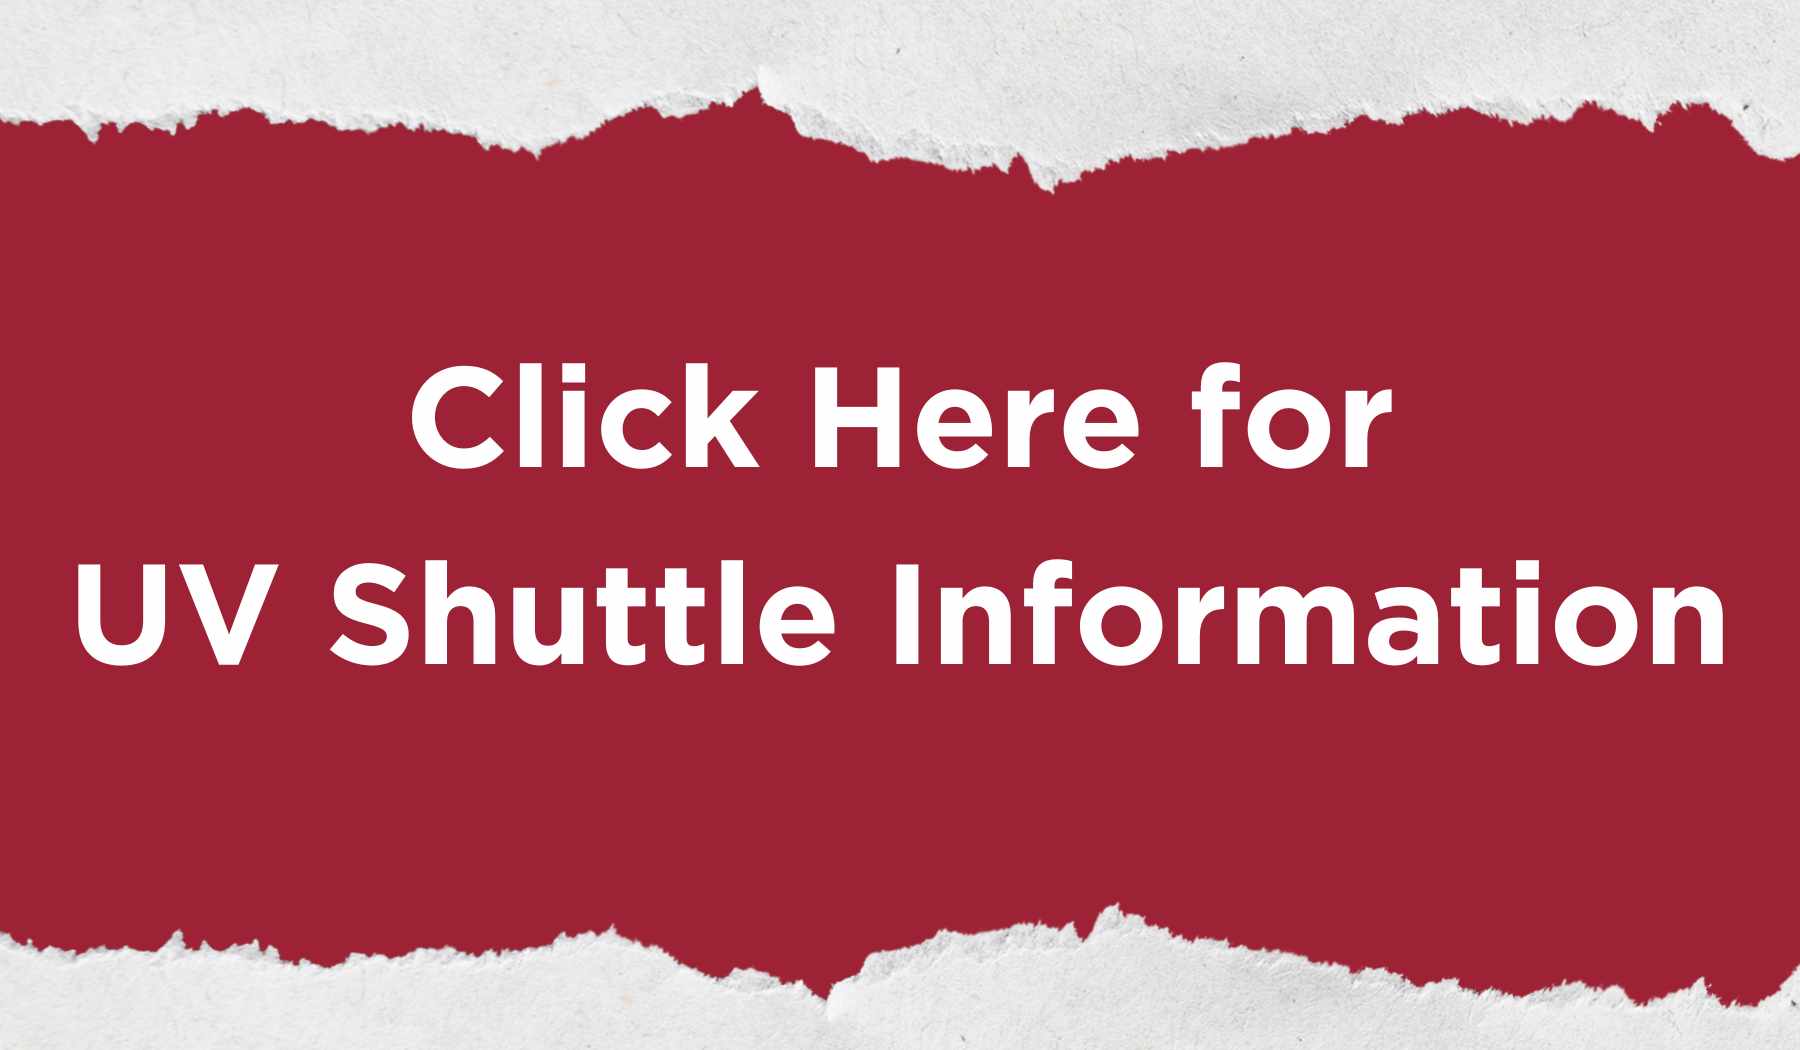 UV shuttle info button